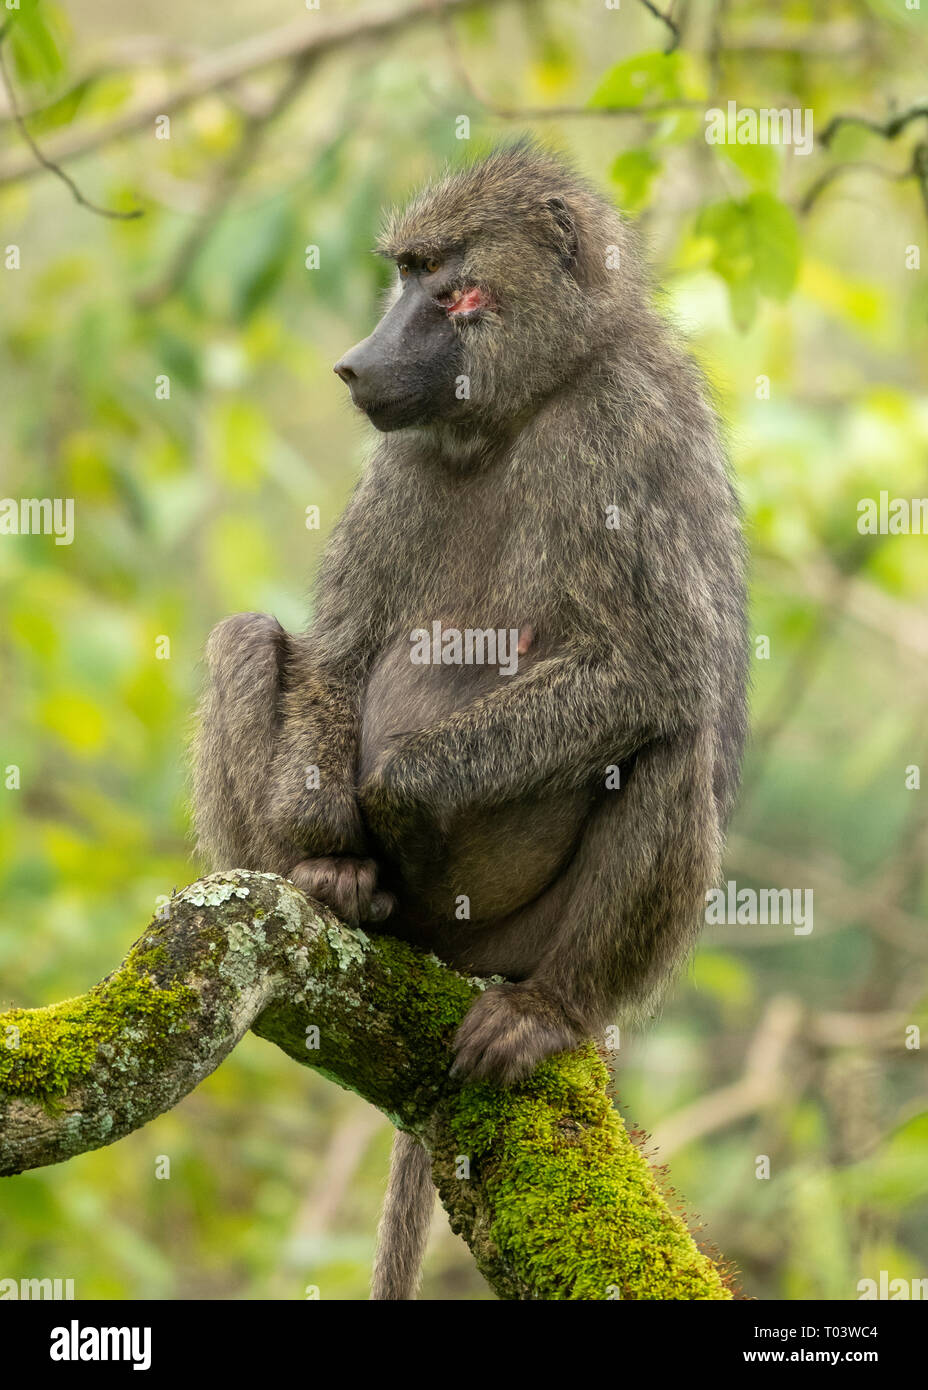 Femmina di babbuino Oliva, papio anubis, nel Parco Nazionale di Arusha, Tanzania Foto Stock